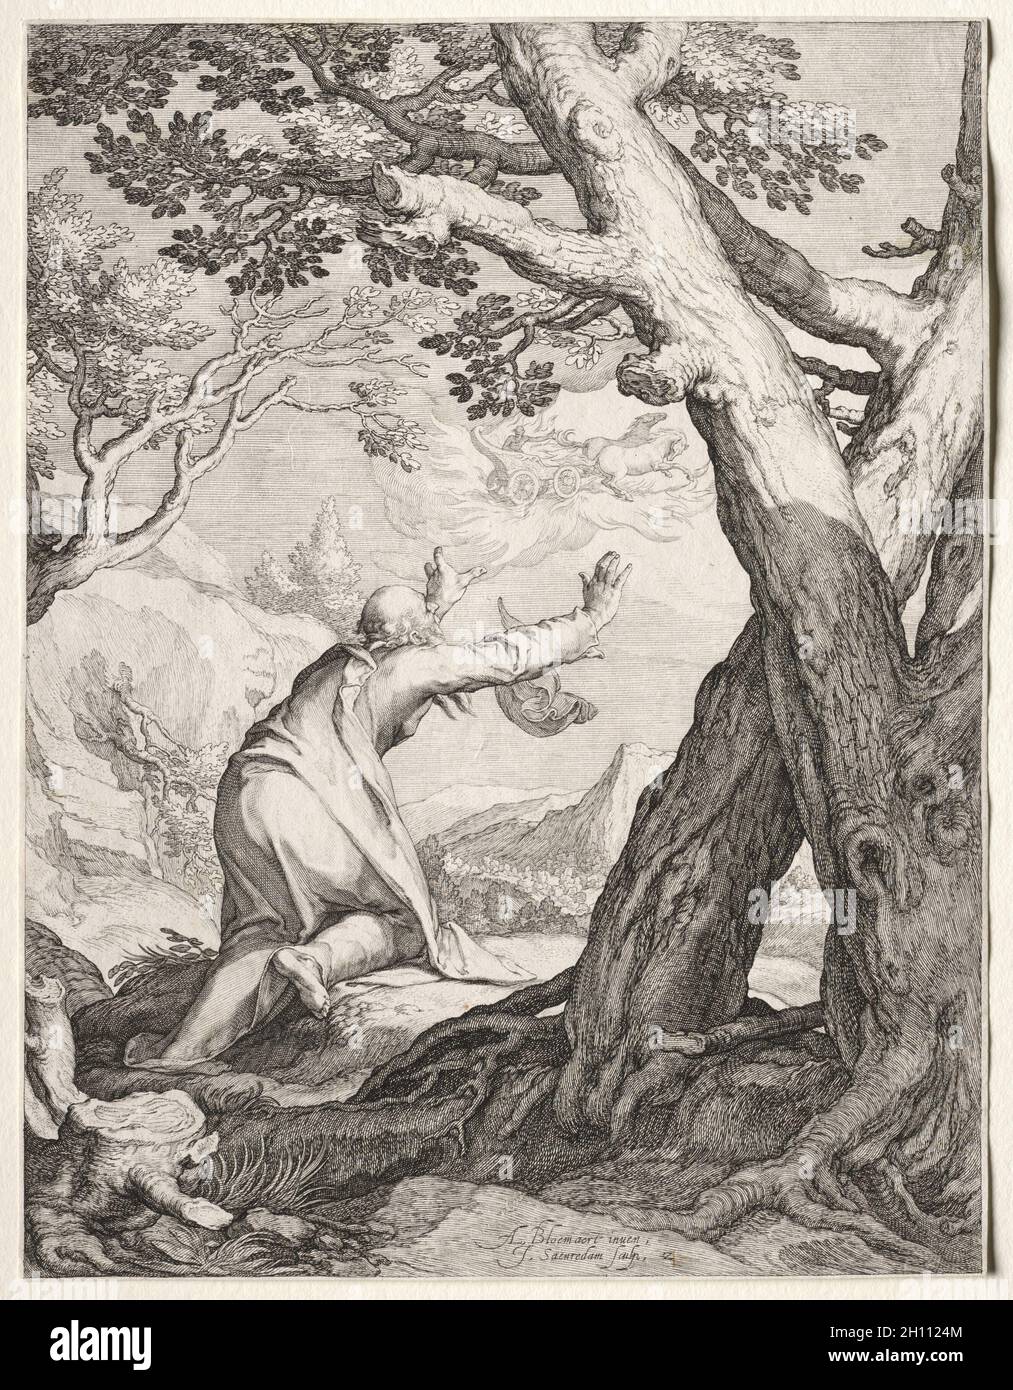 Des scènes du prophète Élie et Élisée : Elijah's char de feu, 1604. Jan Saenredam (Néerlandais, 1565-1607), Jan Saenredam (Néerlandais, 1565-1607), d'après Abraham Bloemaert (Néerlandais, 1564-1651). Fiche technique : 25,5 x 19,5 cm (7 1/16 x 10 11/16 in.). Banque D'Images